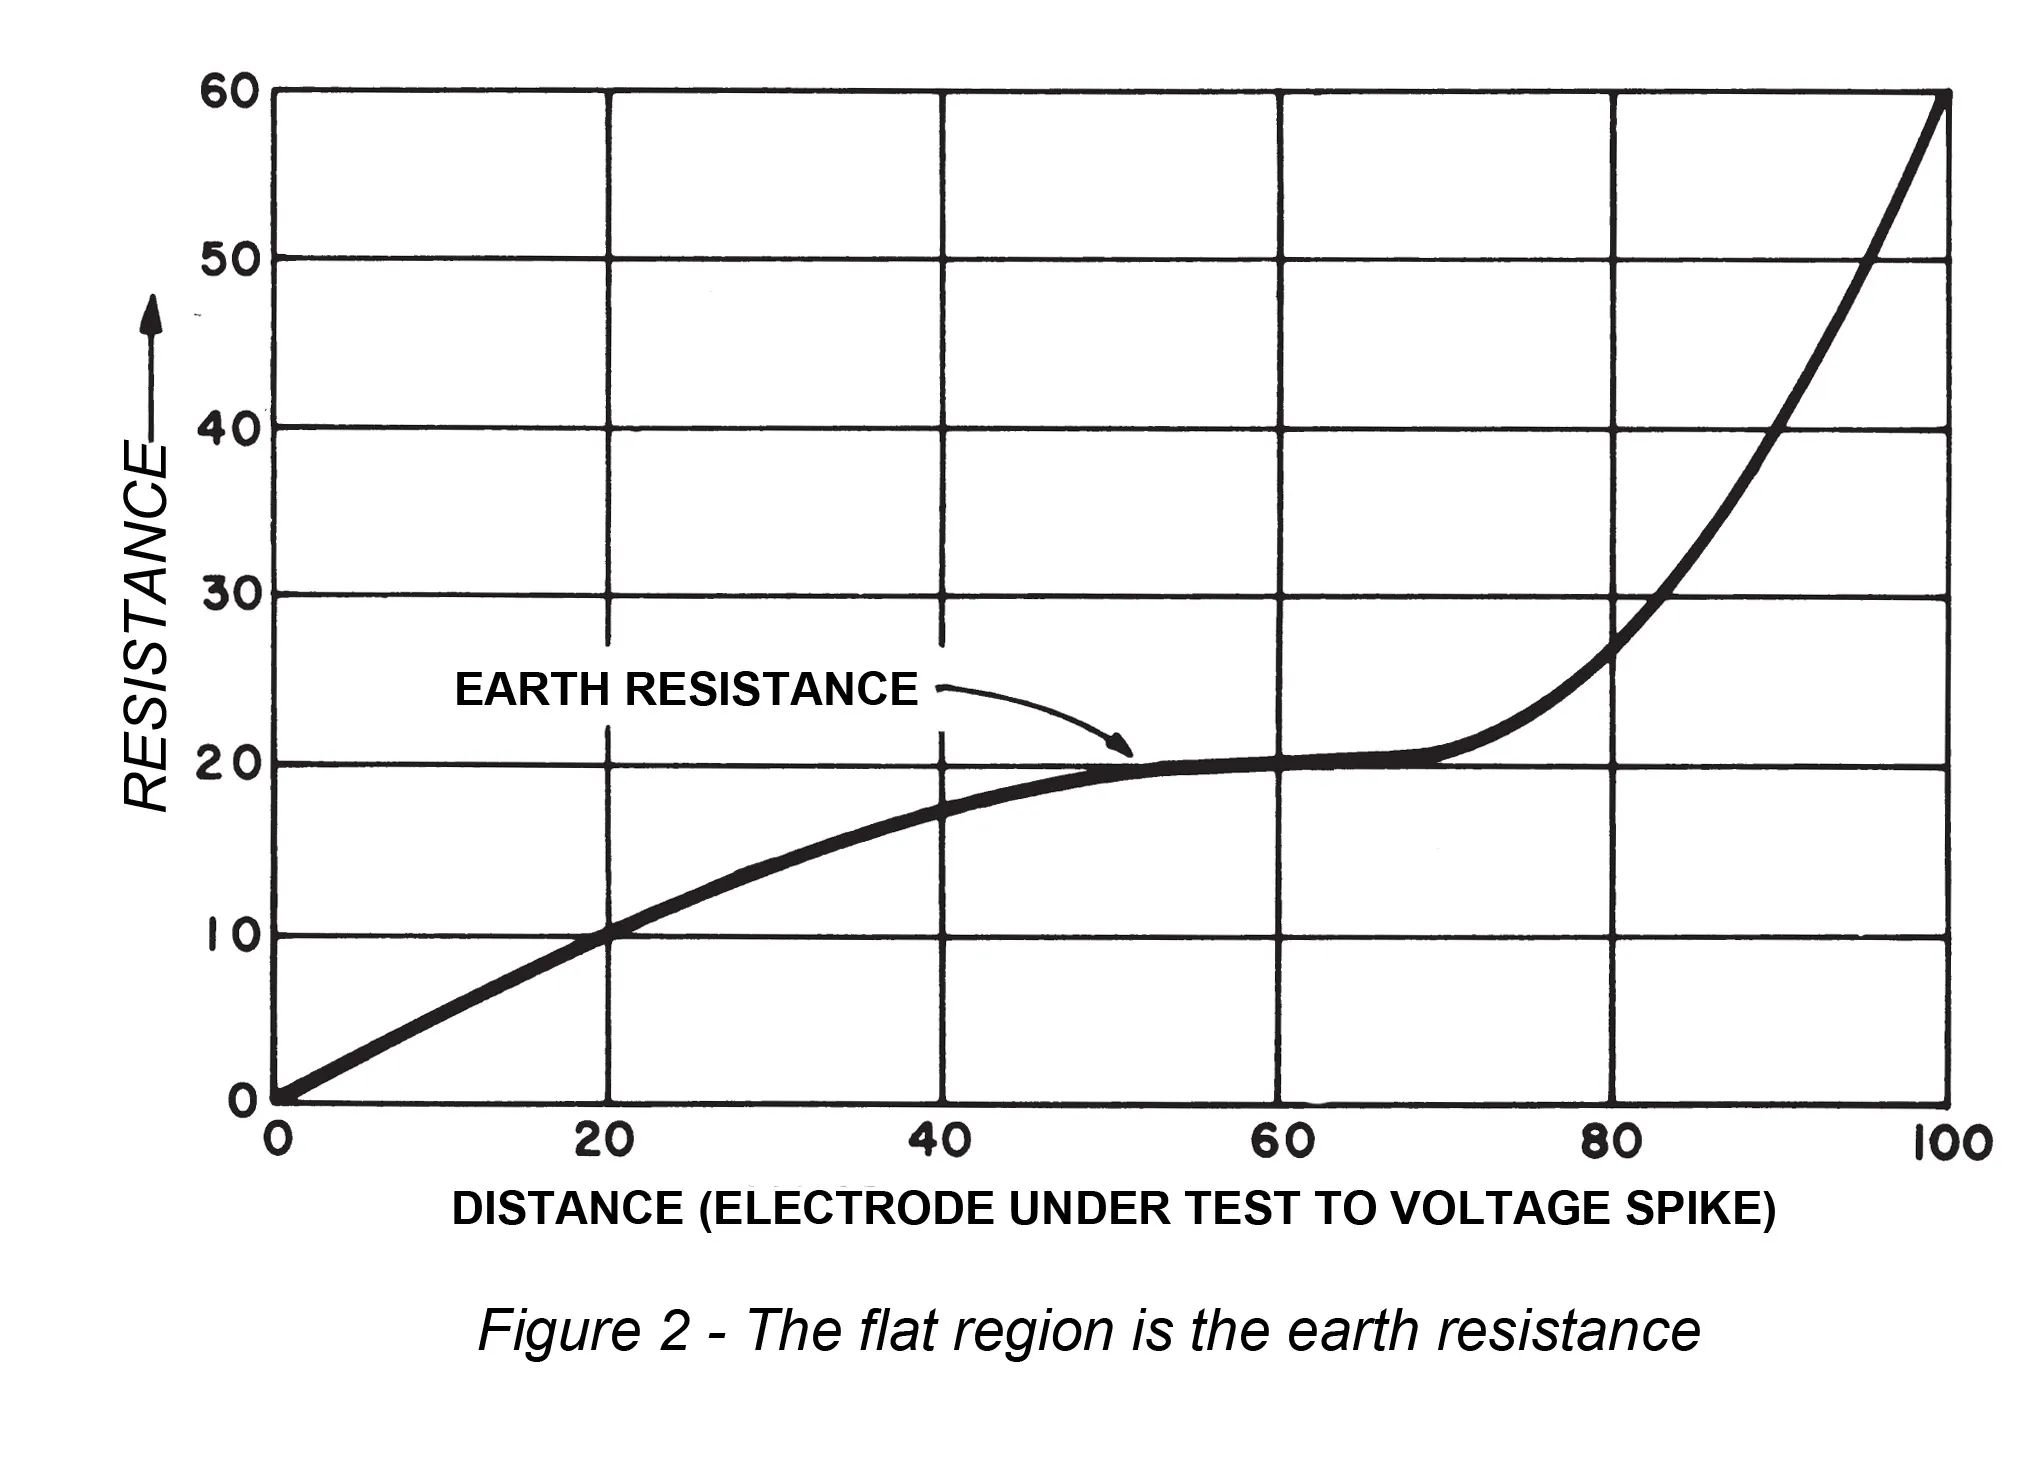 Earth resistance testing under test voltage spike. 